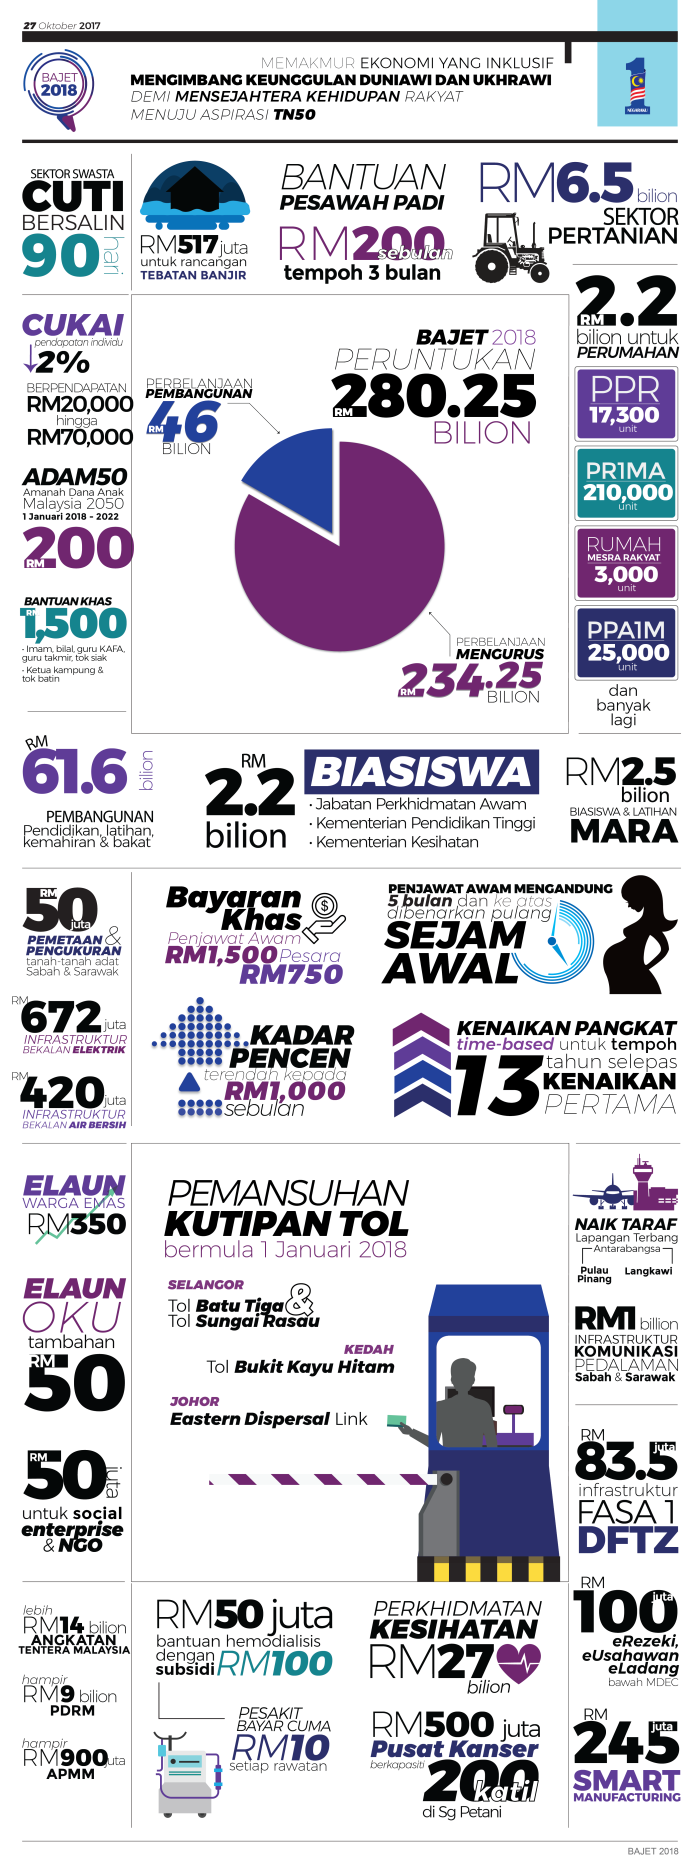 Budget 2019 Malaysia Br1m J Kosong S